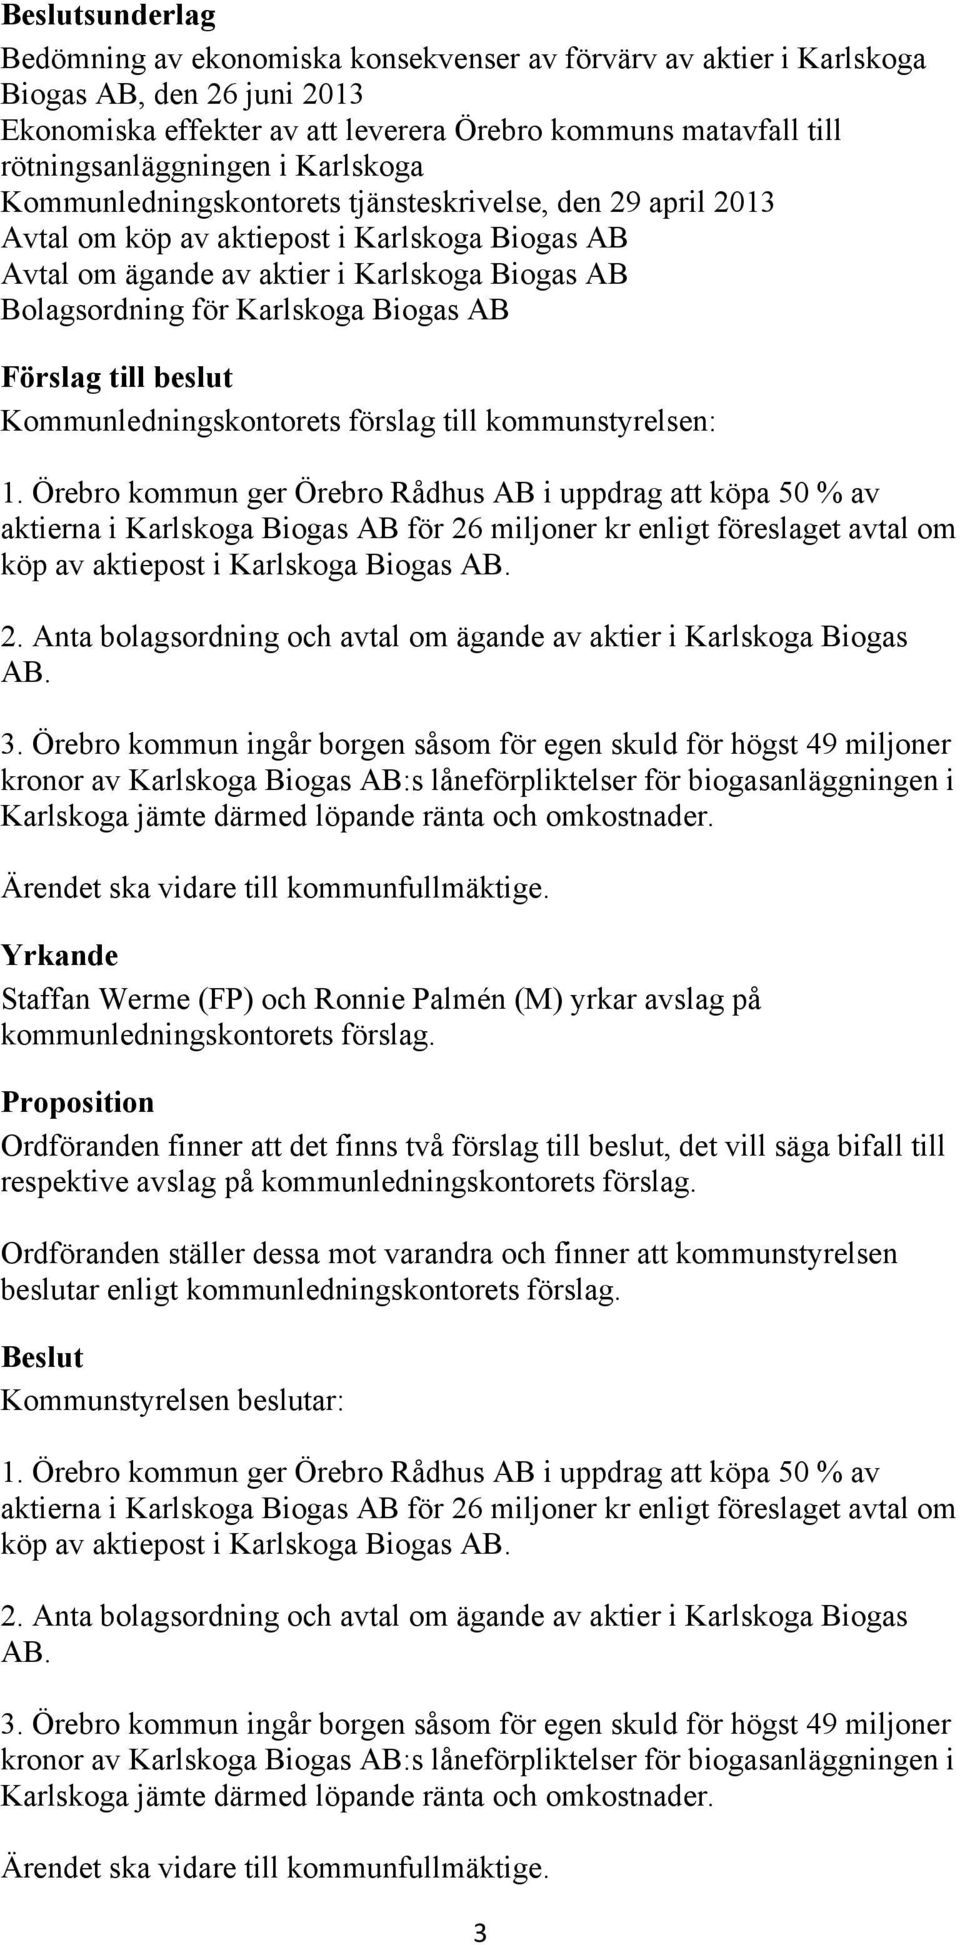 Bolagsordning för Karlskoga Biogas AB Förslag till beslut Kommunledningskontorets förslag till kommunstyrelsen: 1.